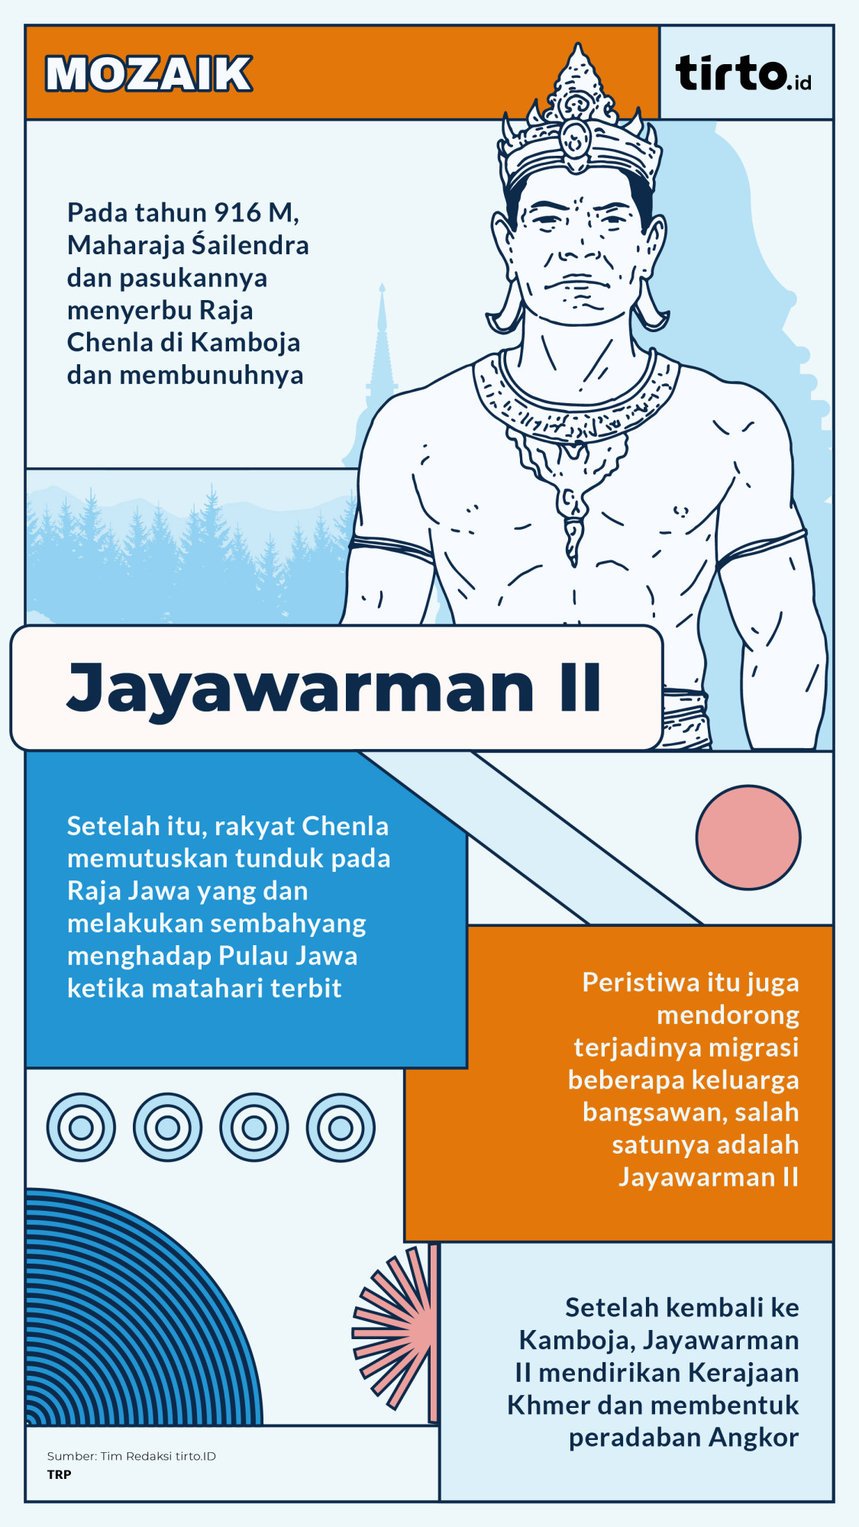 Infografik Mozaik Jayawarman II